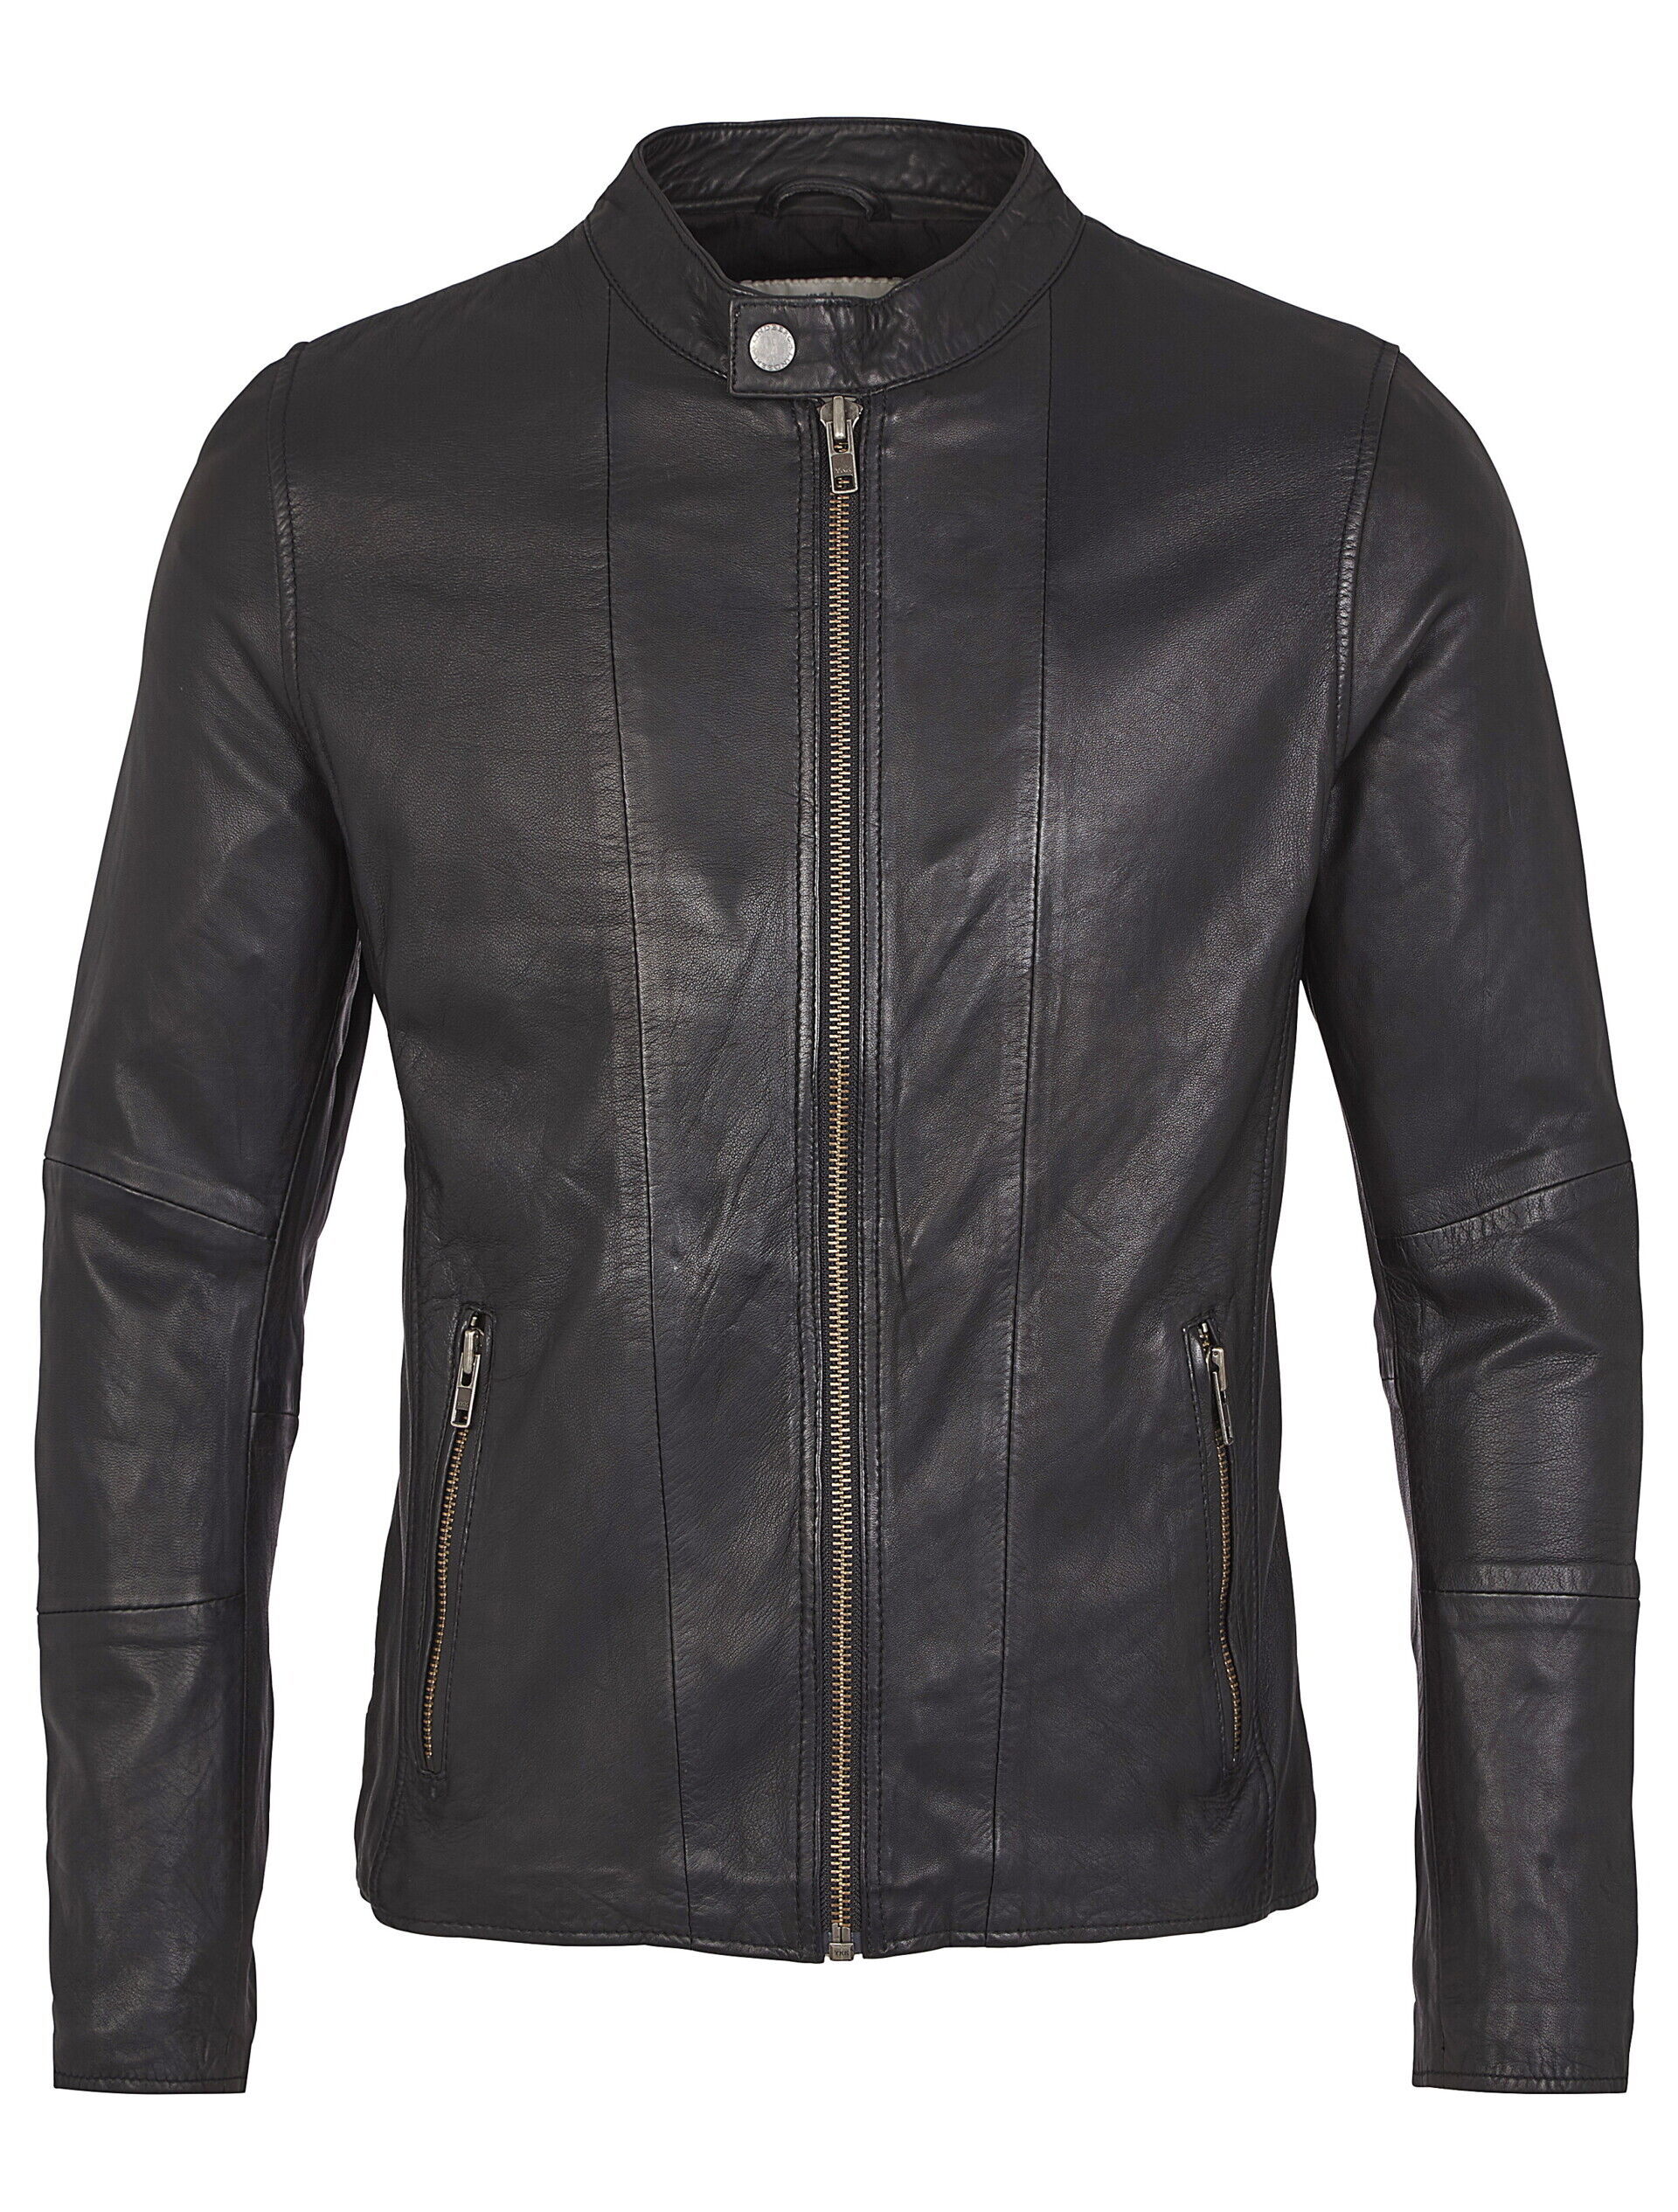 Leather jacket Leather jacket Black 30-10022